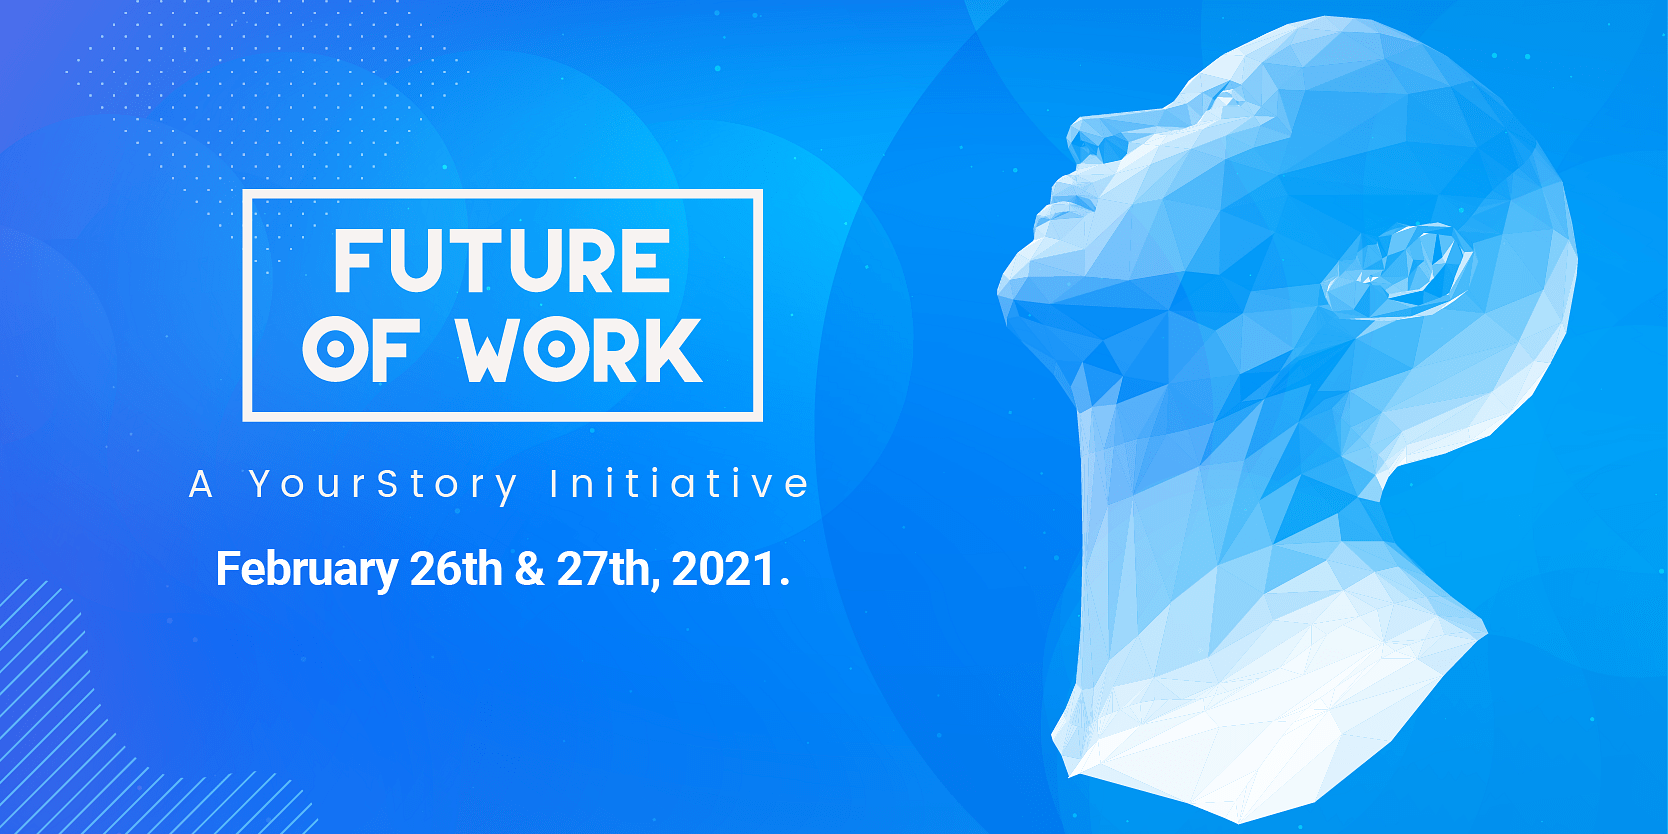 भारत की सबसे बड़ी प्रोडक्ट-टेक-डिजाइन कॉन्फ्रेंस - YourStory’s Future of Work इस बार होगी ऑल-वर्चुअल